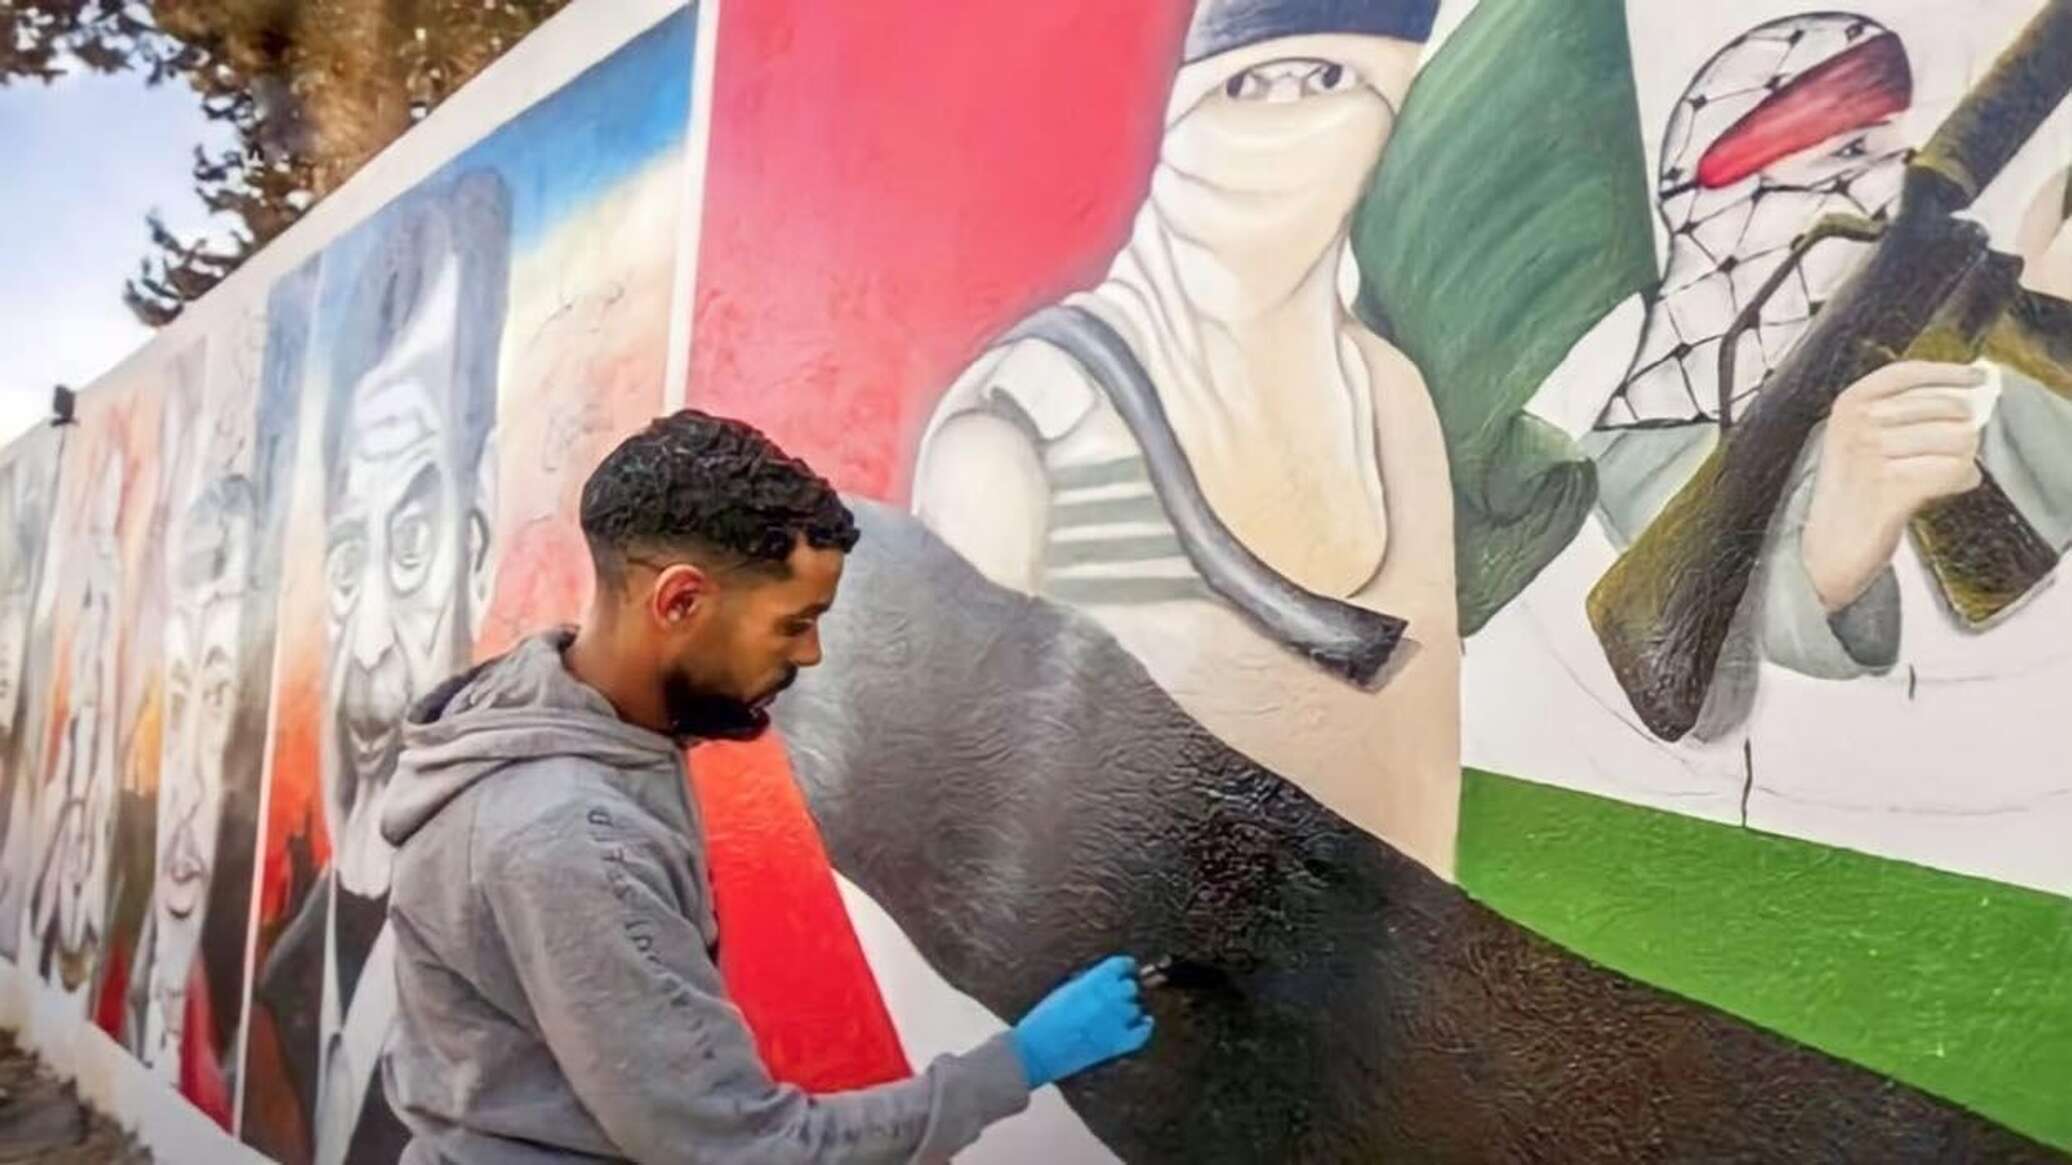 شباب يرسمون جداريات في شوارع تونس توثق معاناة الفلسطينيين وتدعم قضيتهم... صور